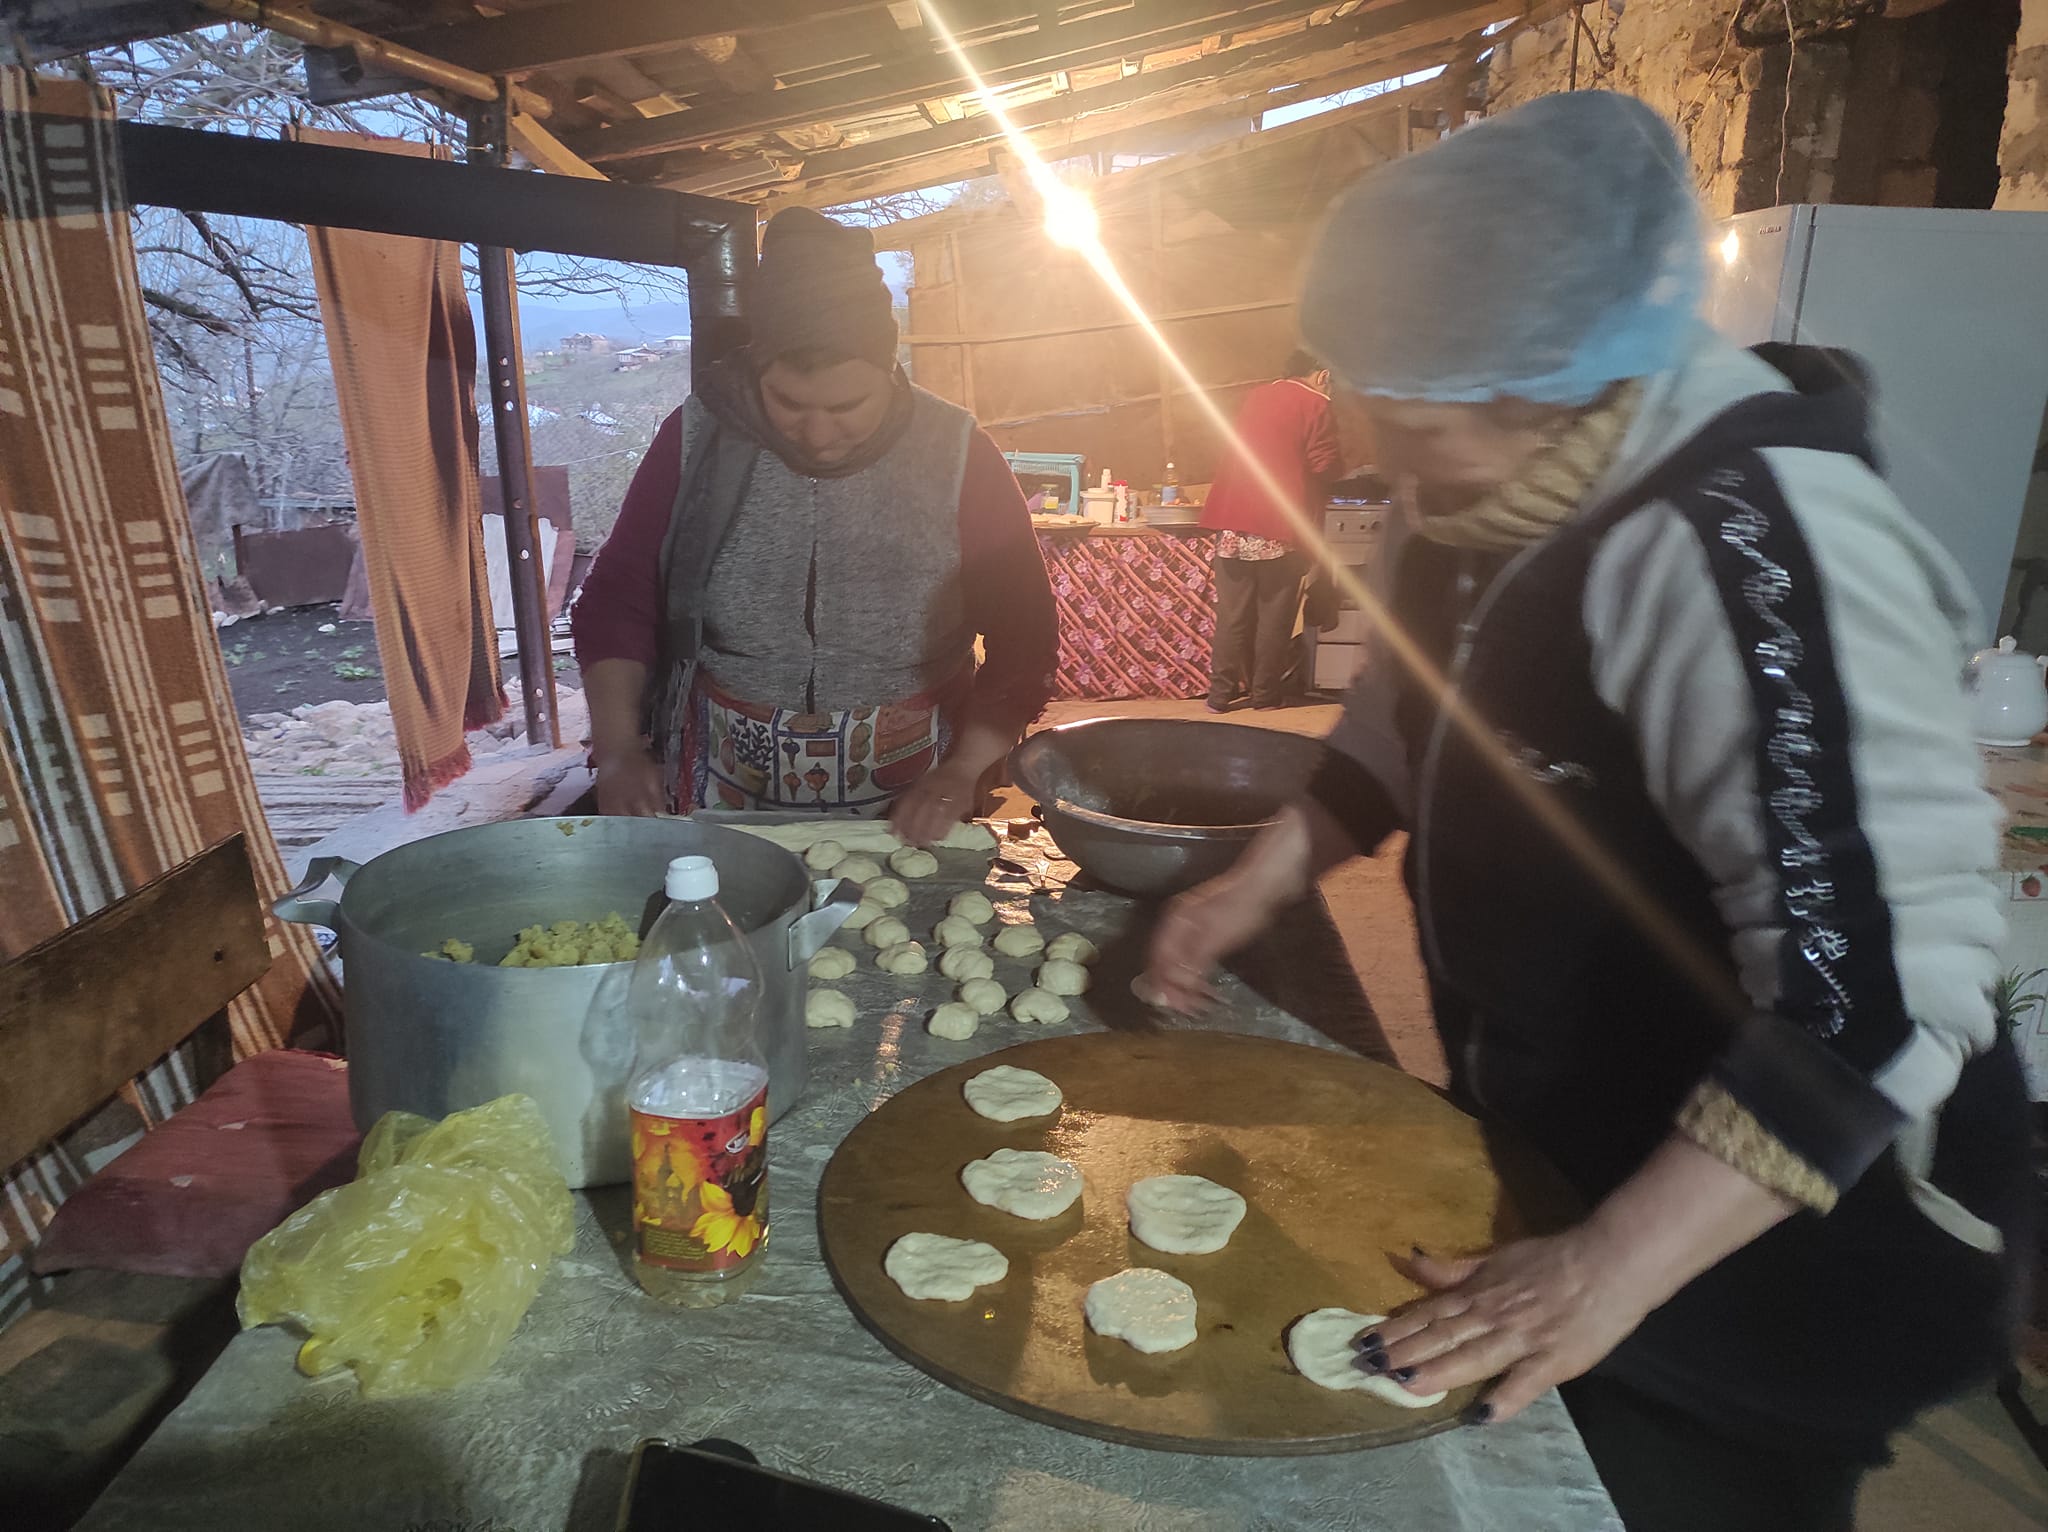 Խրամորթի կանանց պատրաստած կարկանդակները և ժենգյալով հացը հասել են առաջնագիծ (տեսանյութ)